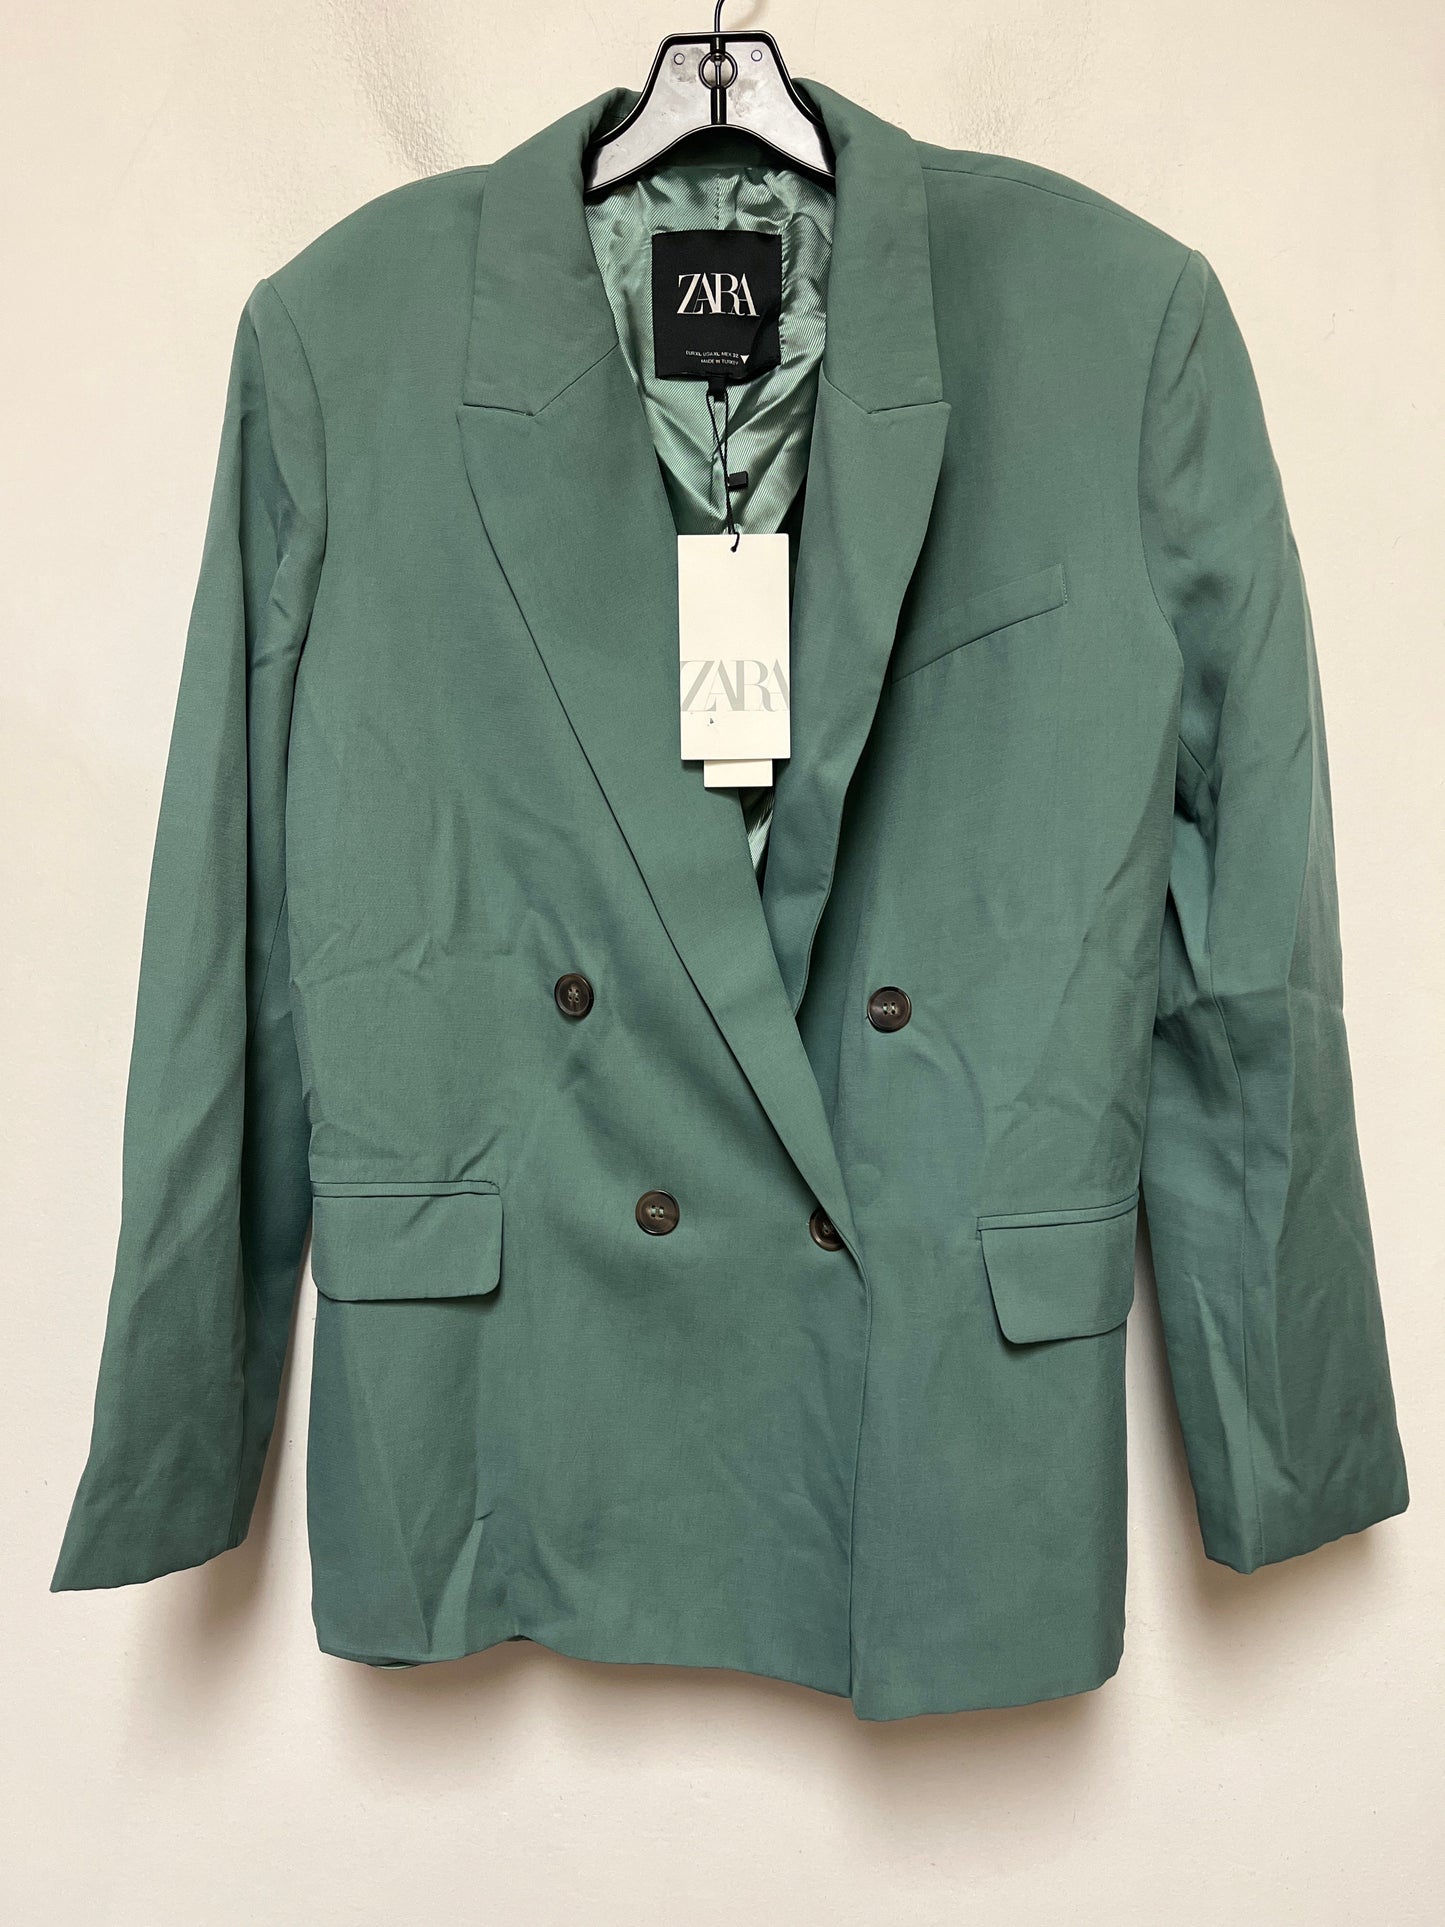 Green Blazer Zara, Size Xl